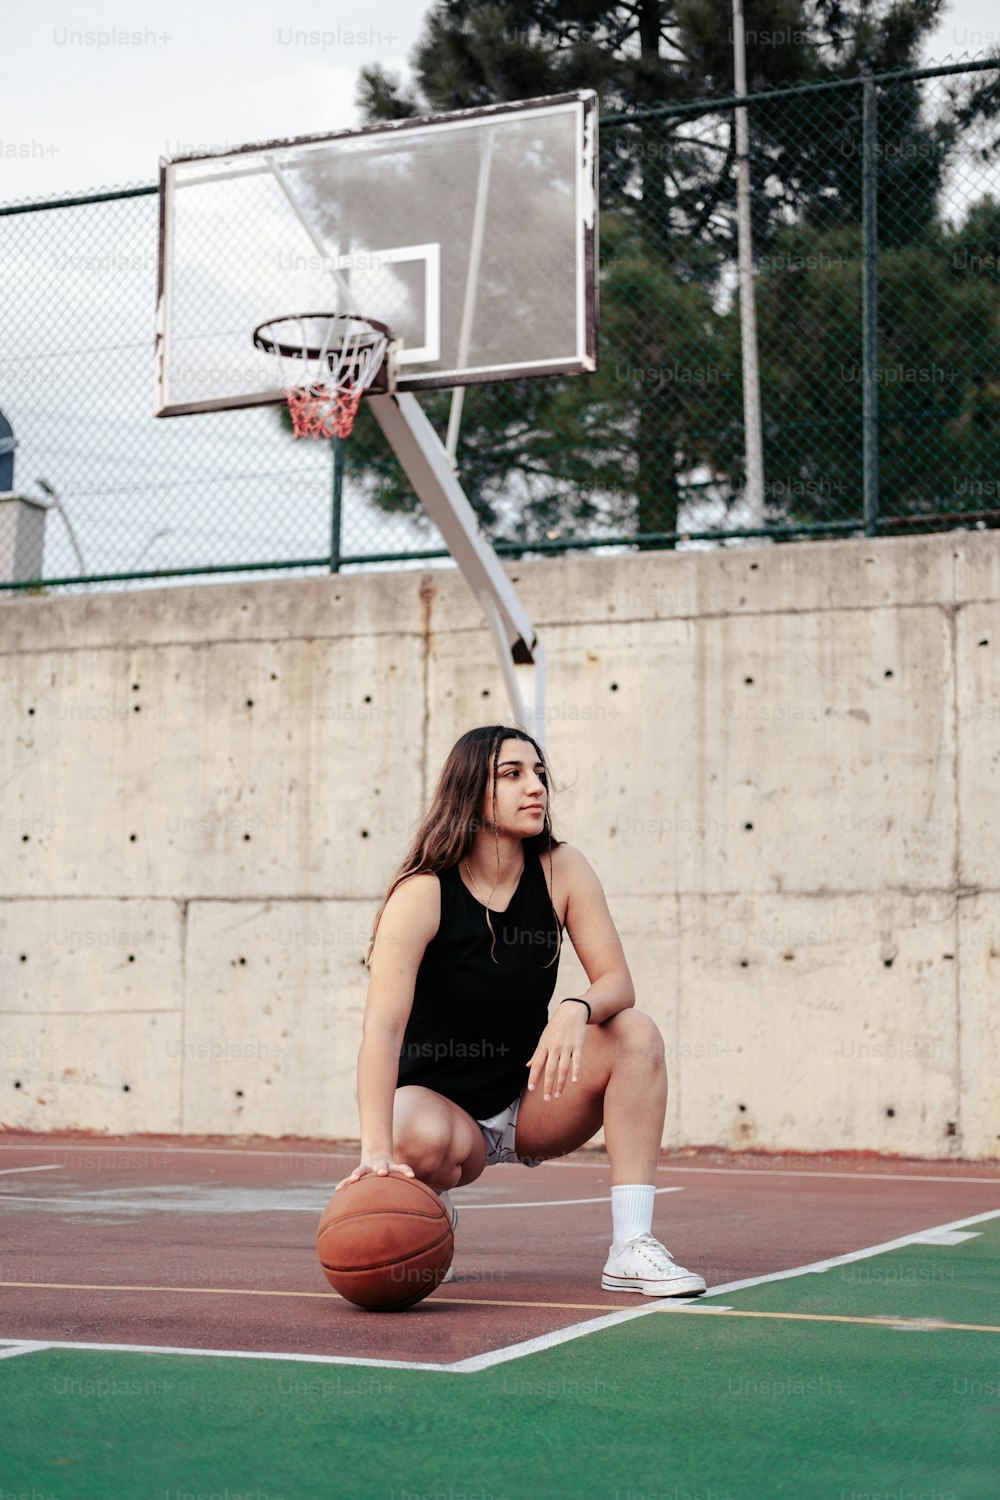 Una mujer sentada en una cancha de baloncesto sosteniendo una pelota de baloncesto